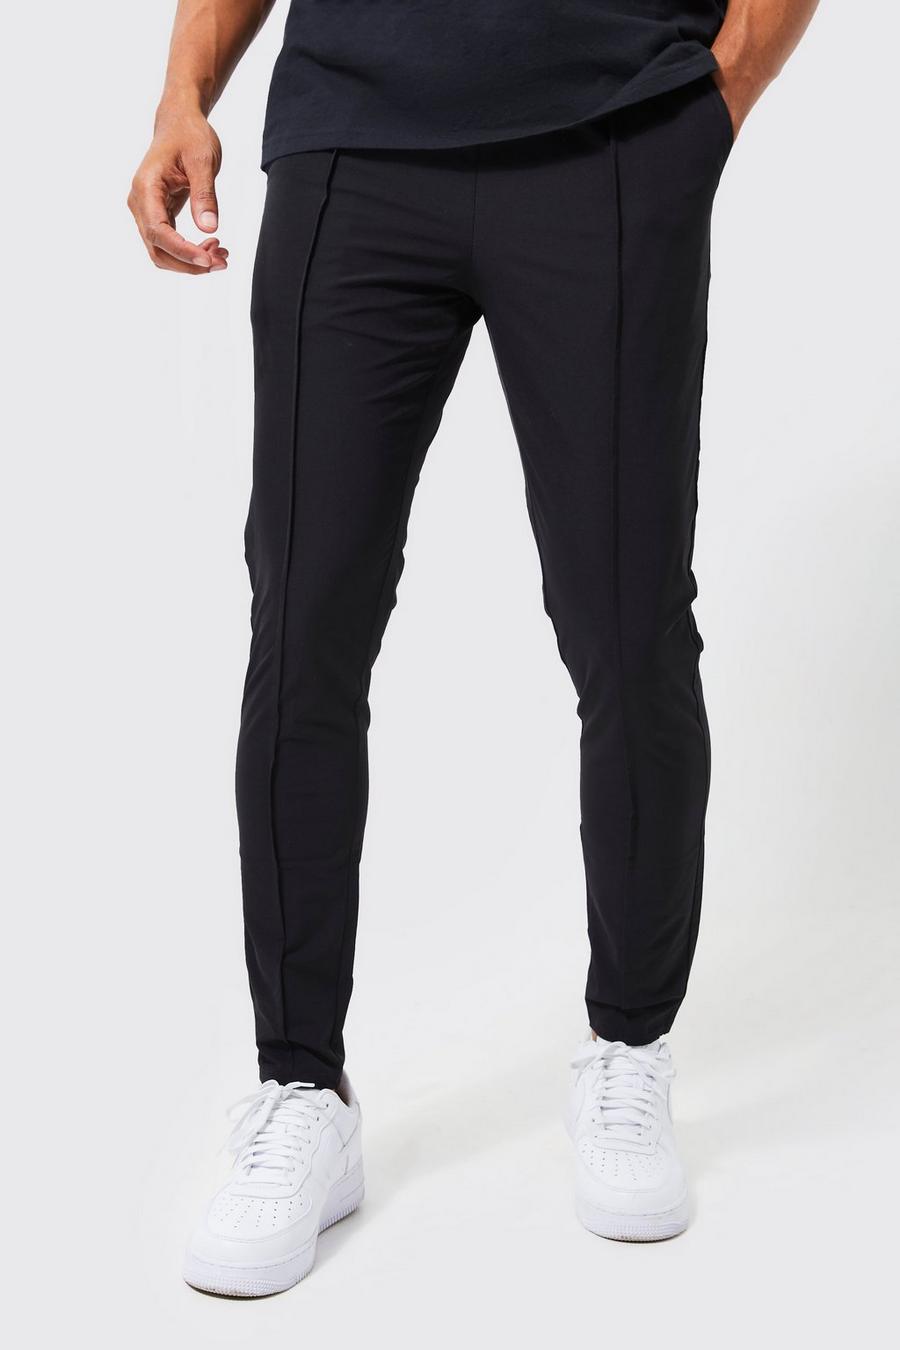 Pantalon léger à pinces et taille élastique, Black